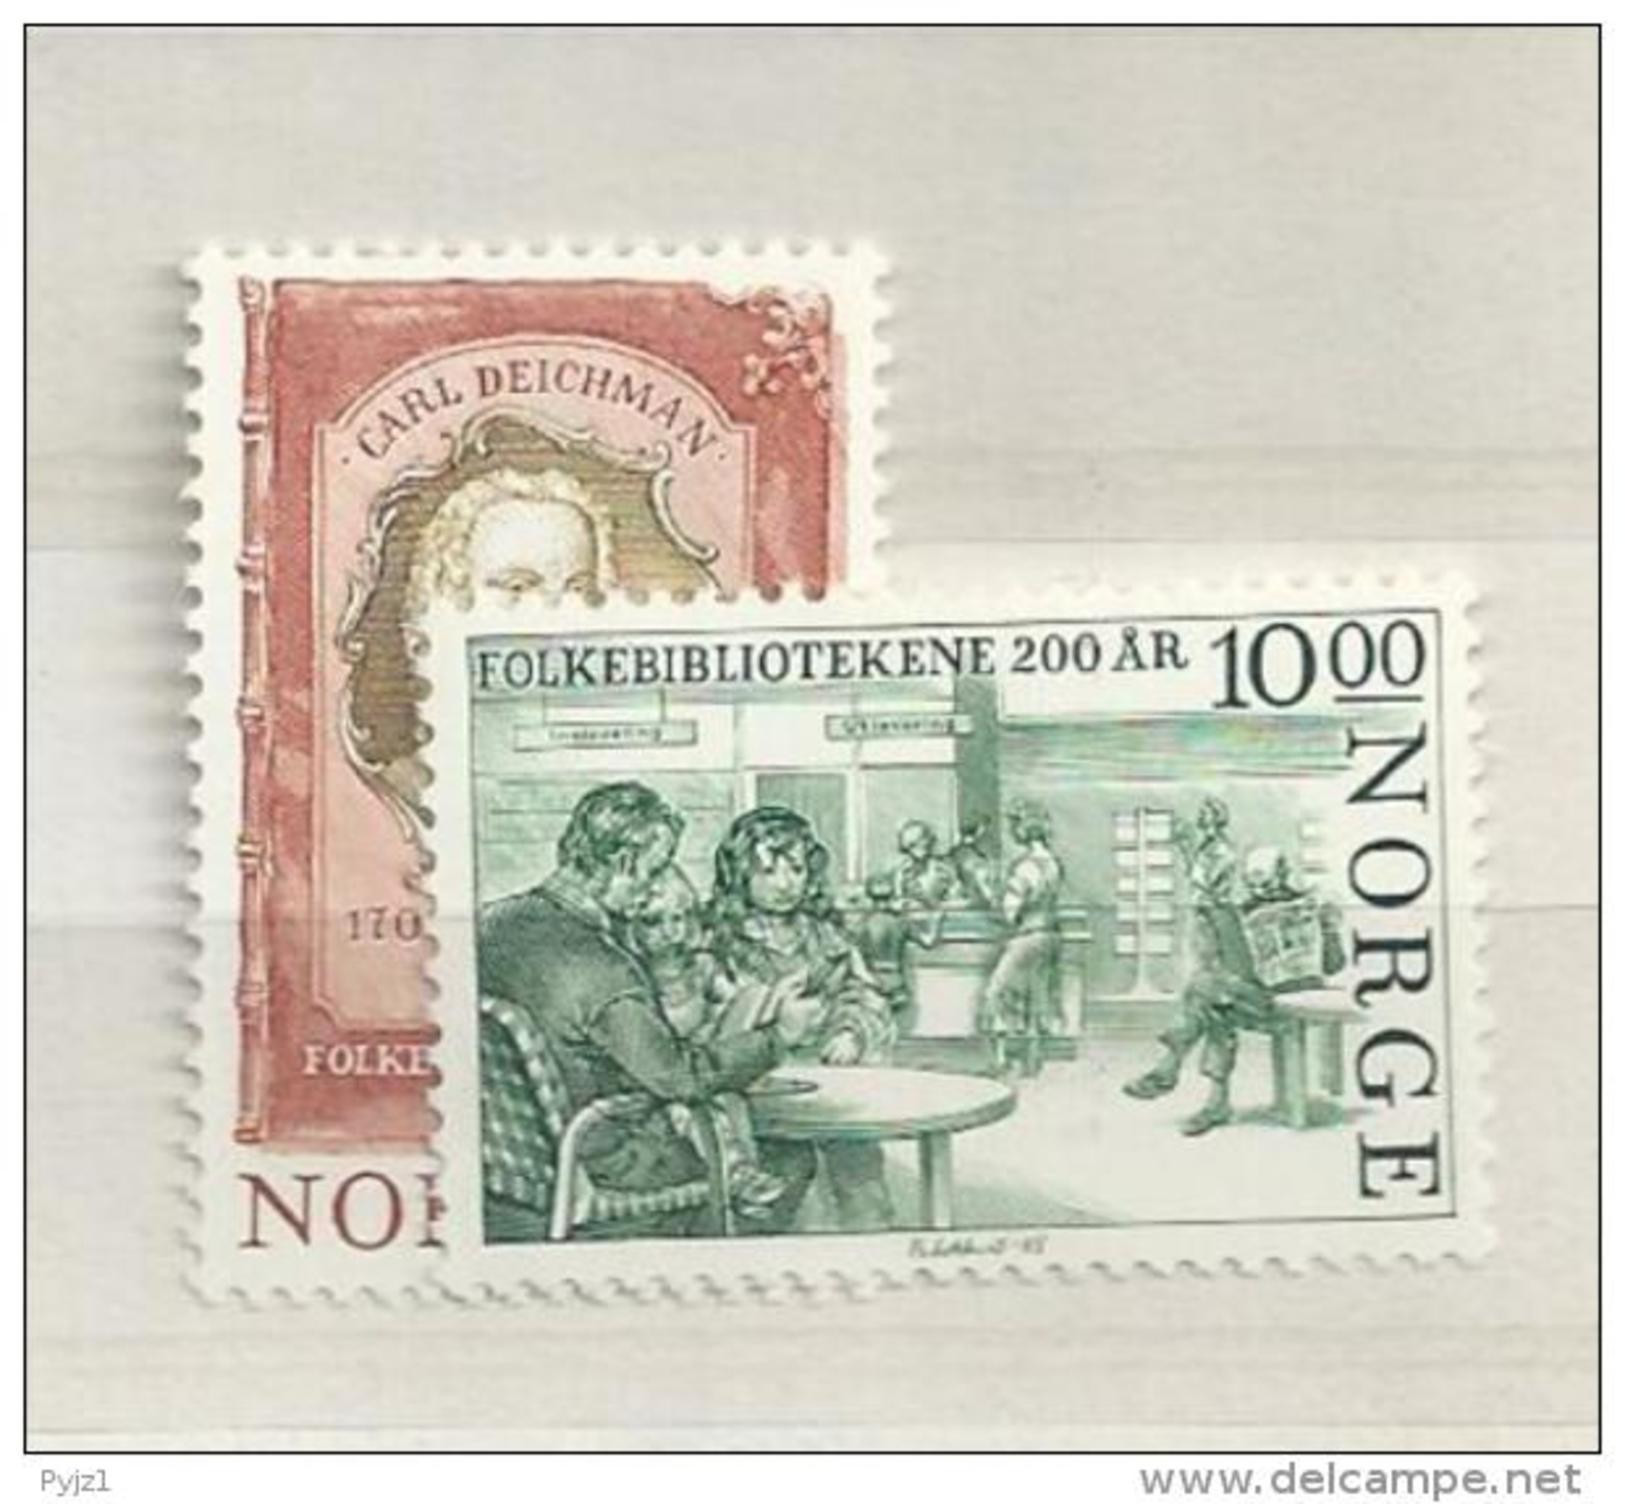 1985 MNH Norway, Postfris** - Unused Stamps